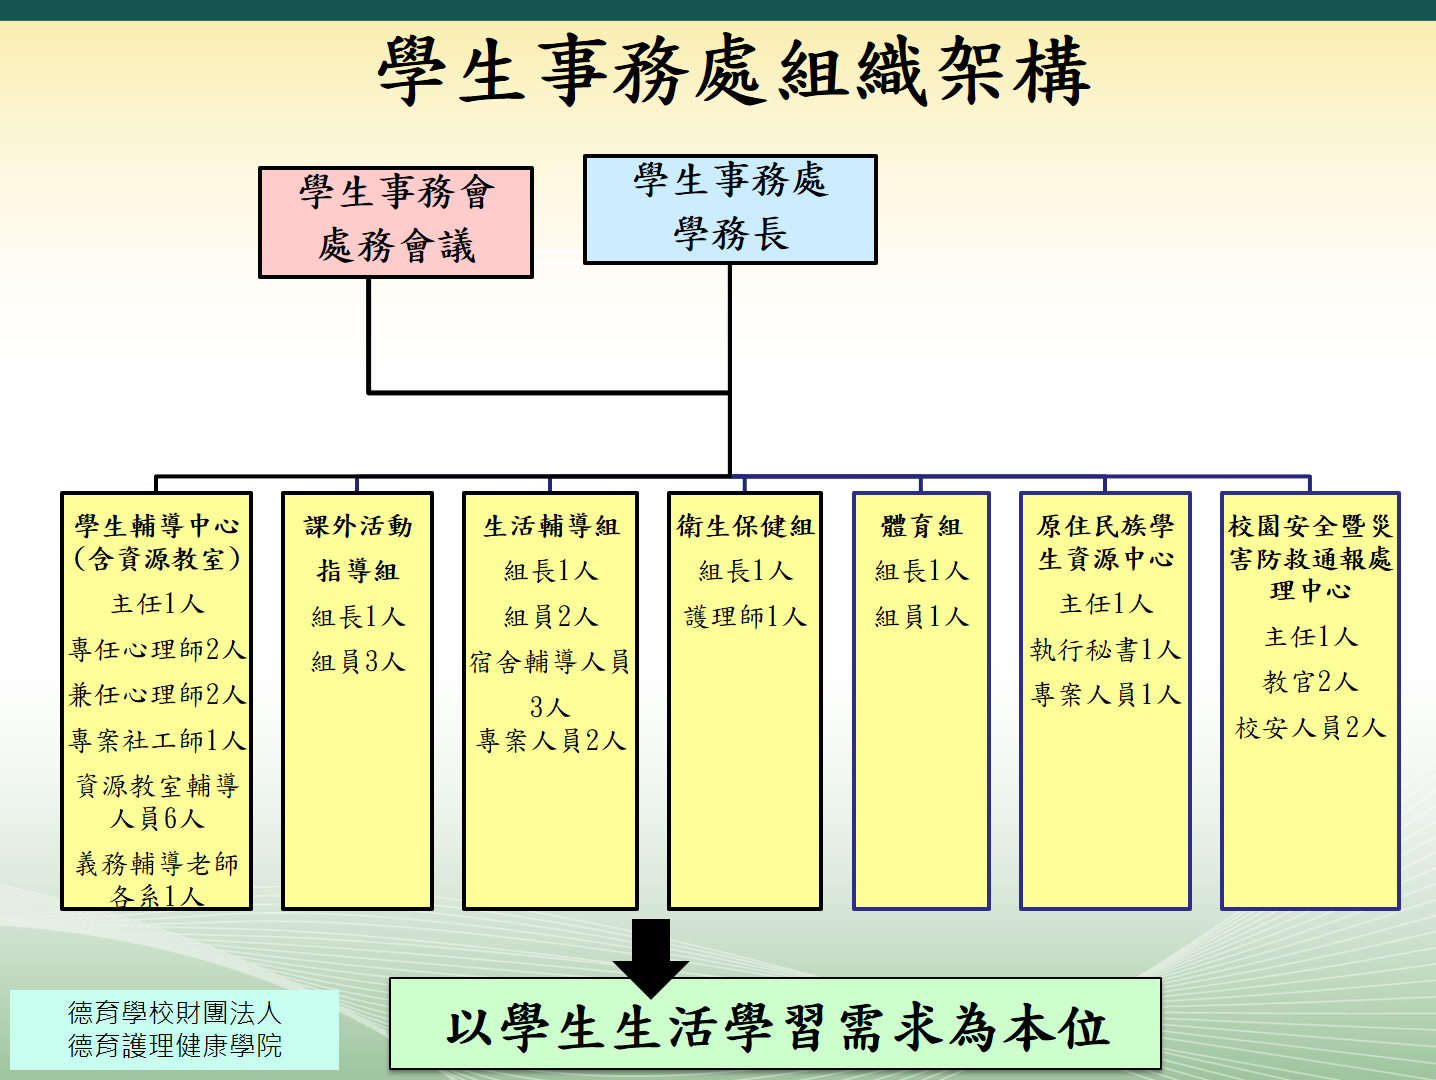 學務處單位組織架構圖